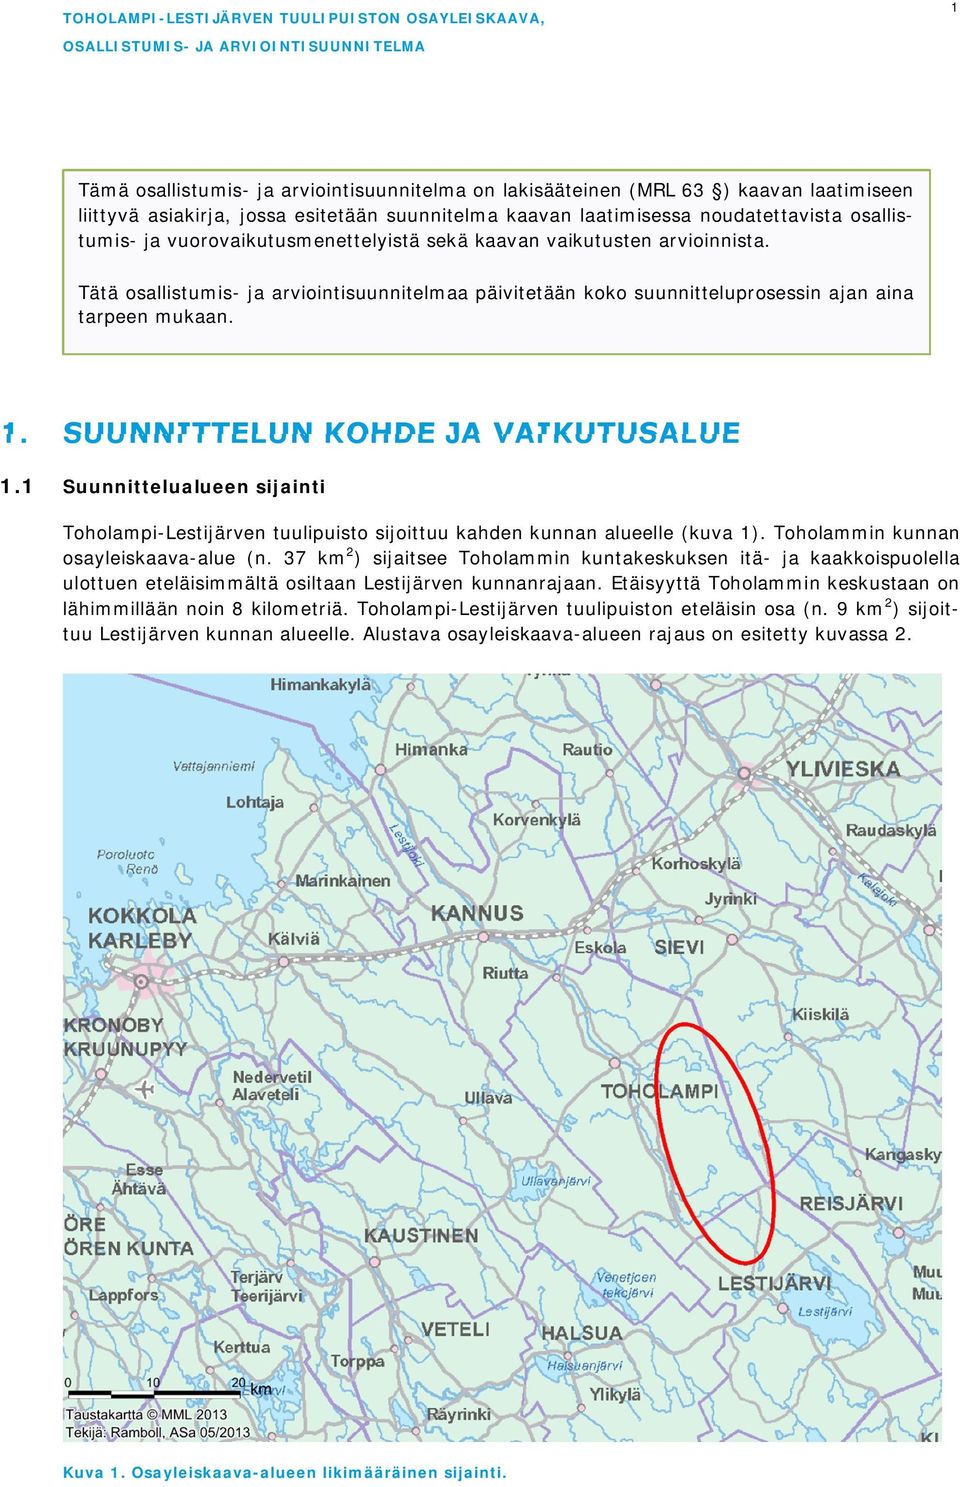 SUUNNITTELUN KOHDE JA VAIKUTUSALUE 1.1 Suunnittelualueen sijainti Toholampi-Lestijärven tuulipuisto sijoittuu kahden kunnan alueelle (kuva 1). Toholammin kunnan osayleiskaava-alue (n.